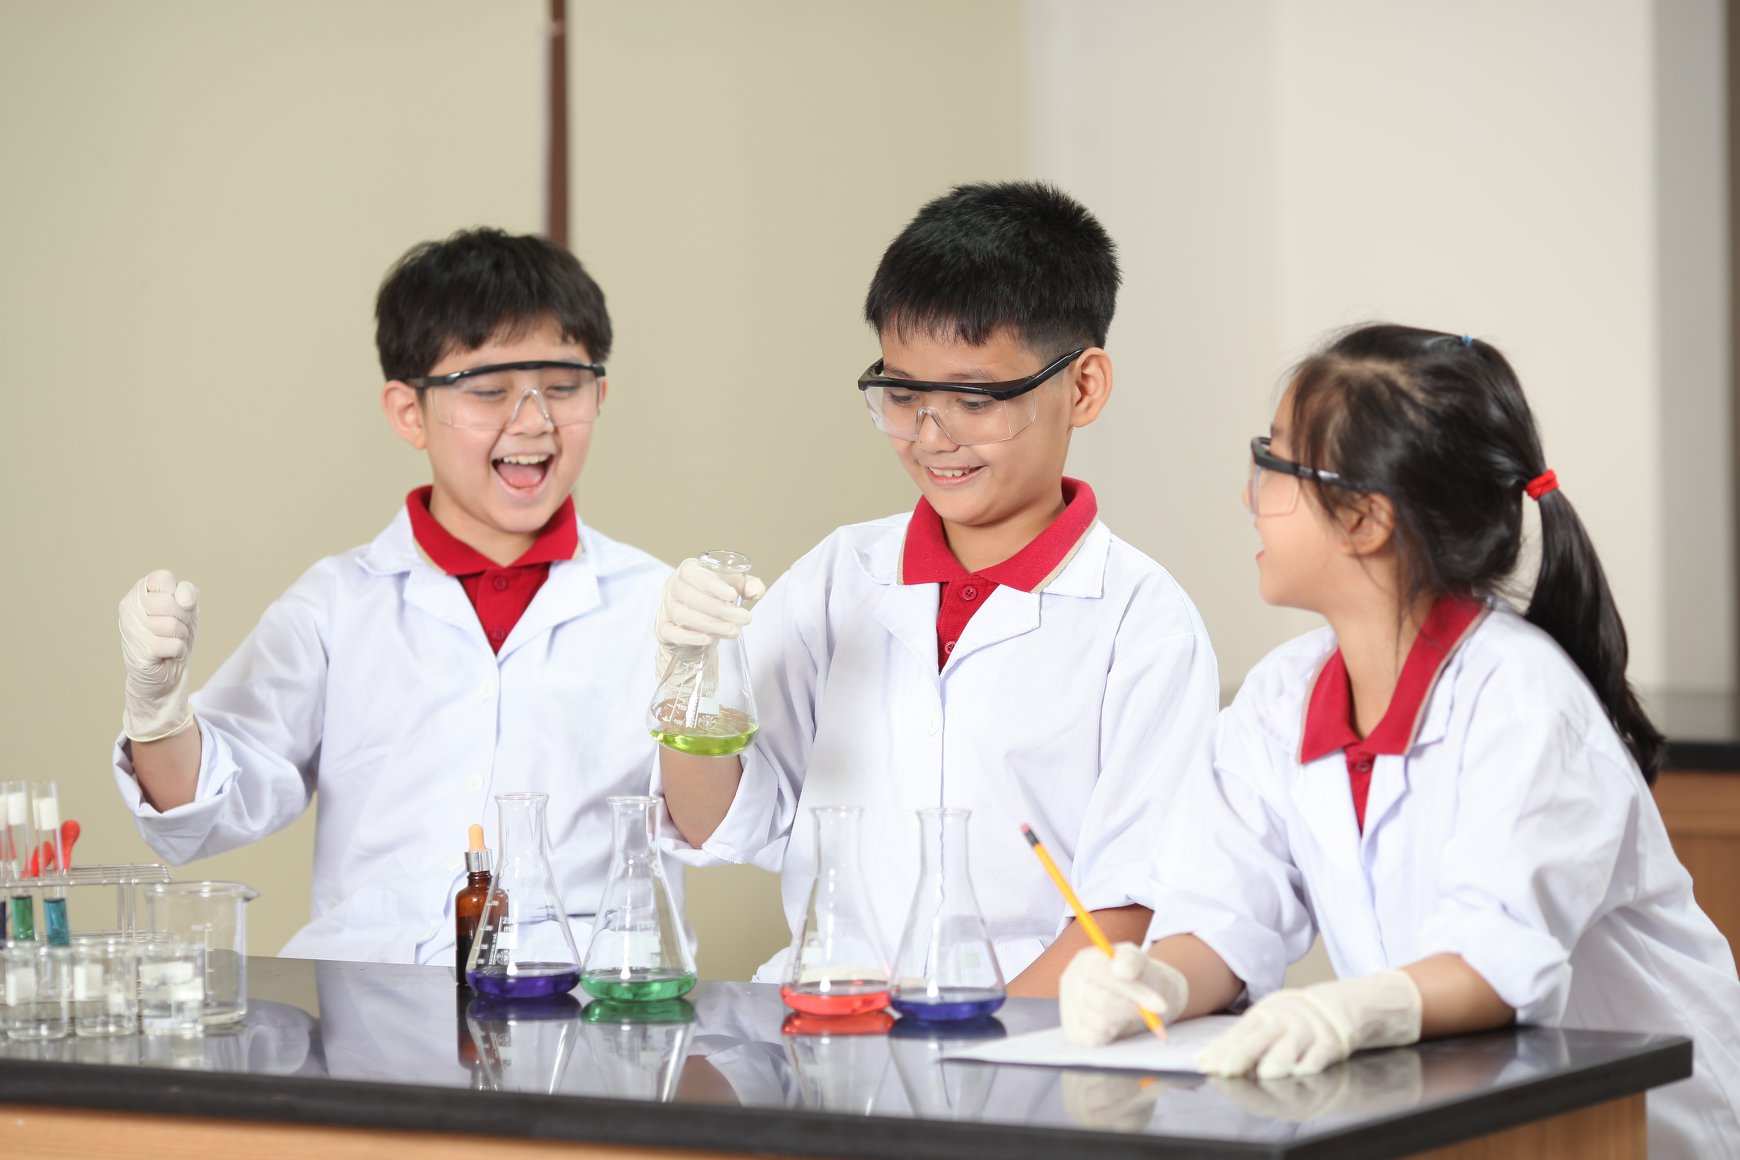 Các em được hóa thân thành các nhà khoa học trong các buổi thực hành tại phòng thí nghiệm